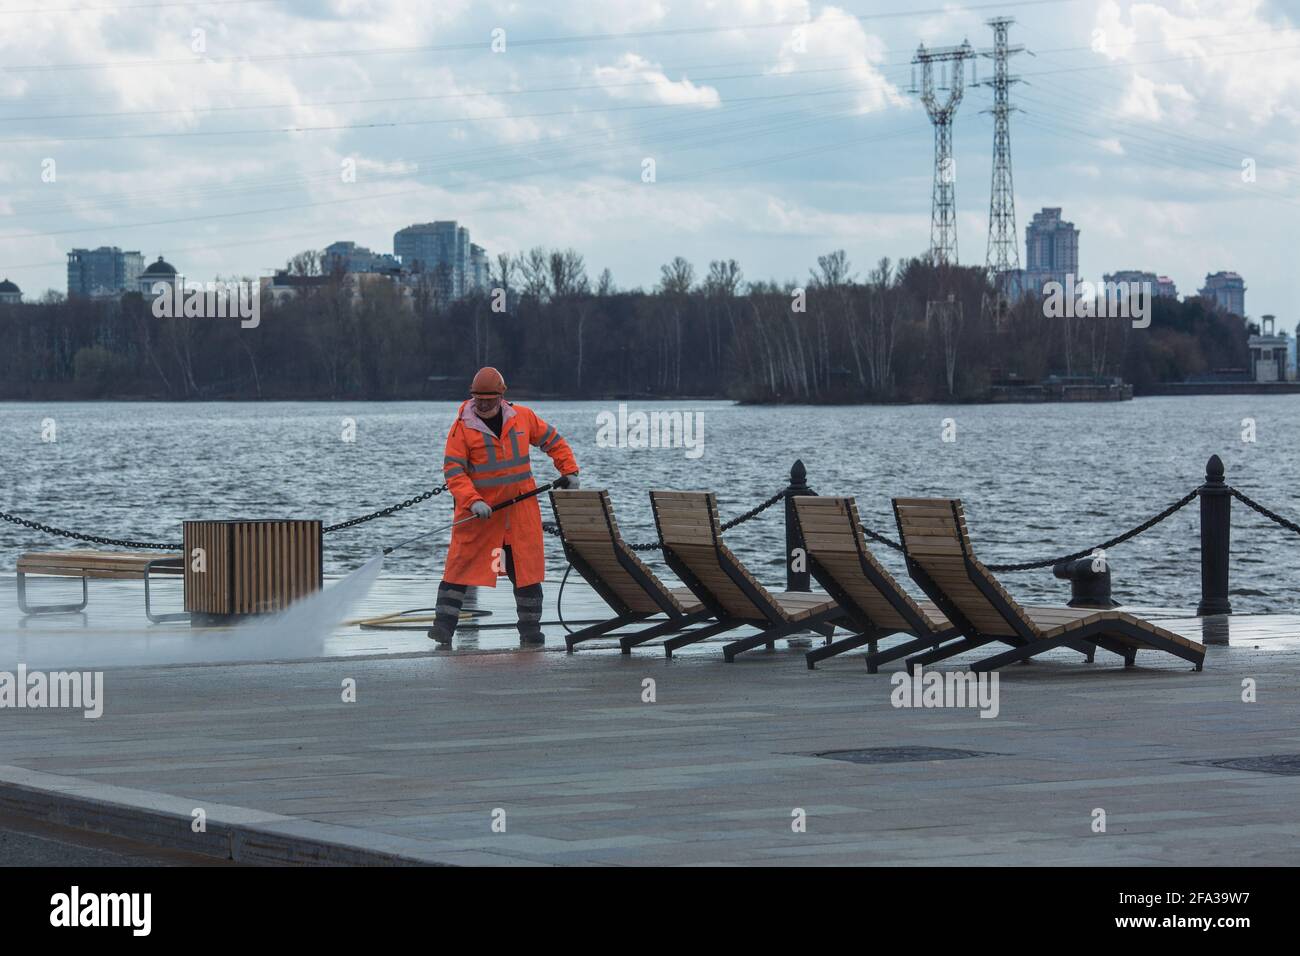 Moscú, Rusia - 22 2021 de abril: Trabajador municipal que limpia el terraplén utilizando equipos de agua a alta presión. Foto de stock